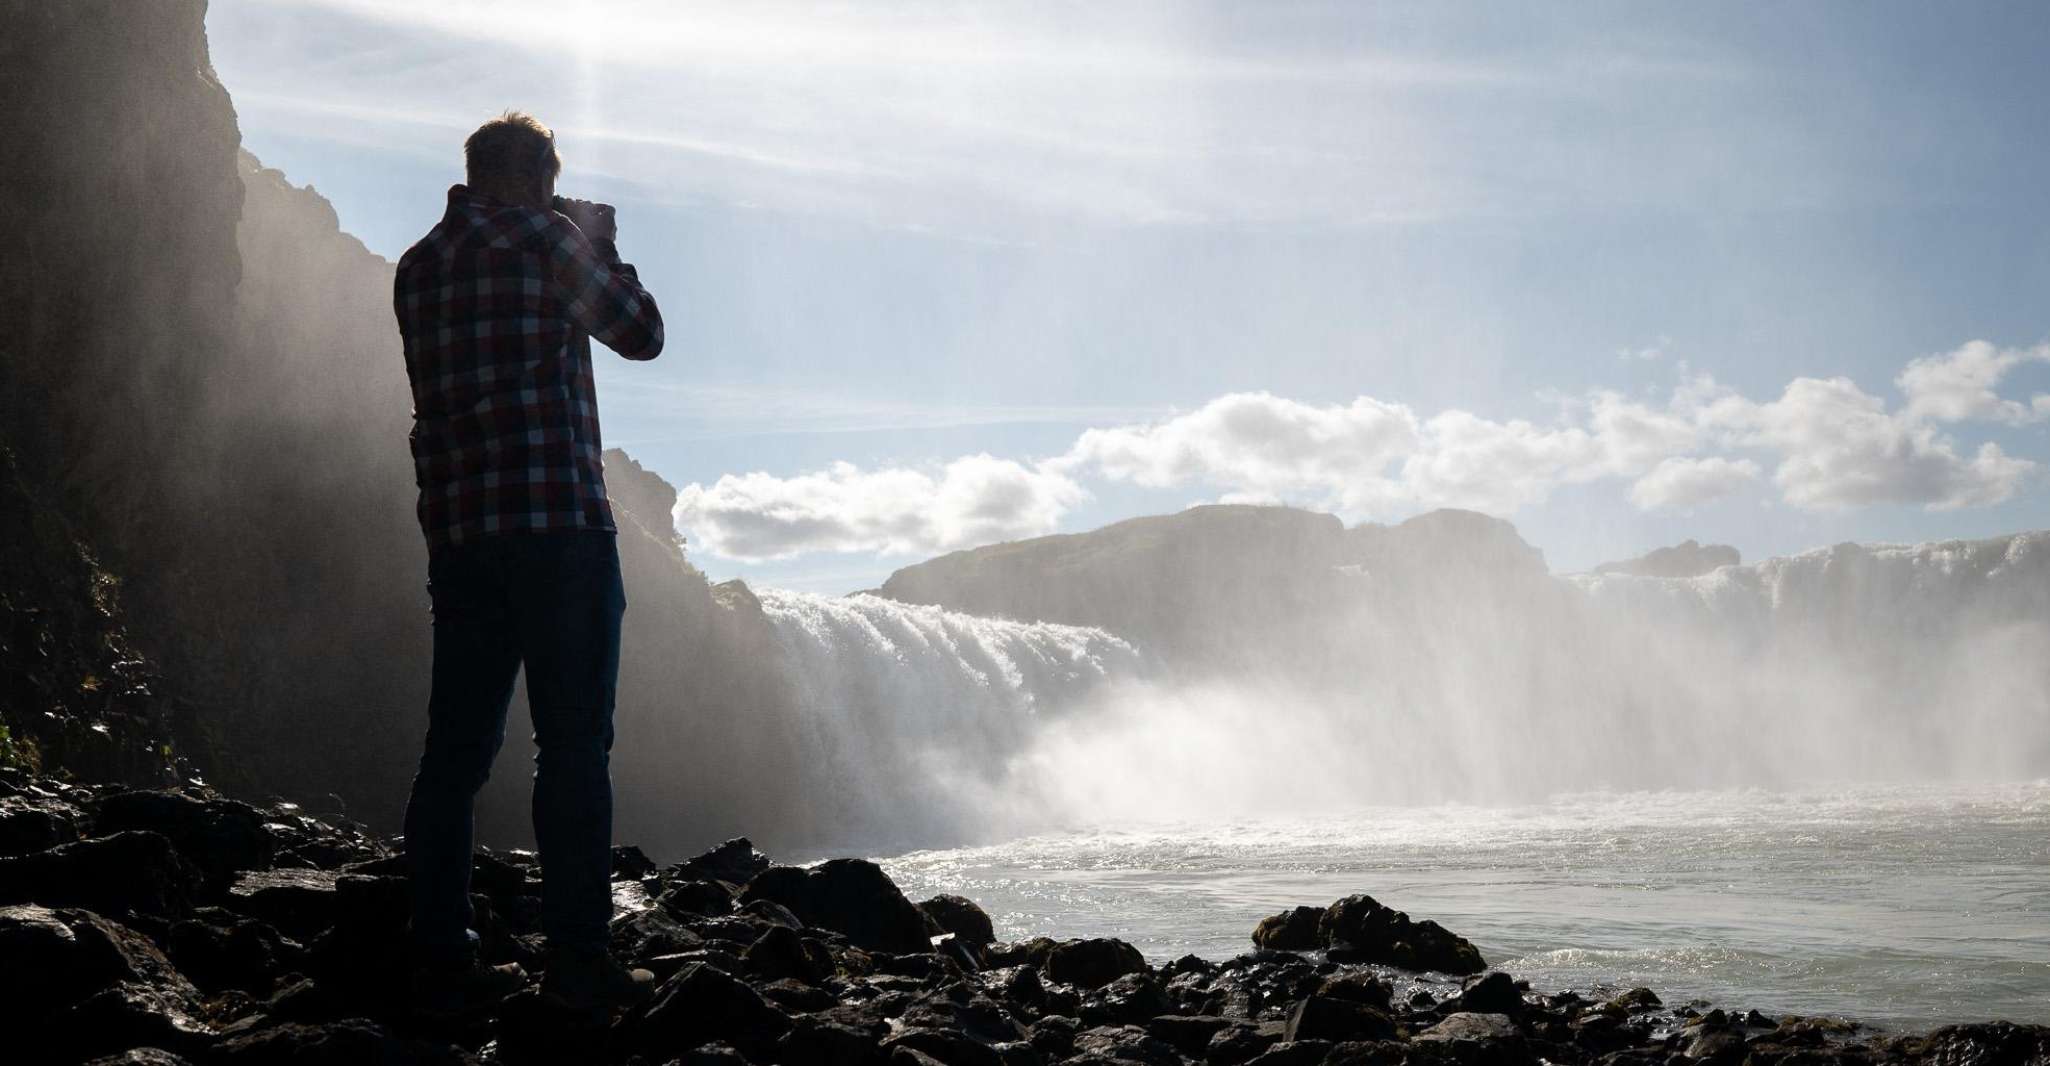 Akureyri, Lake Mývatn and Godafoss Waterfall Landscapes Tour - Housity